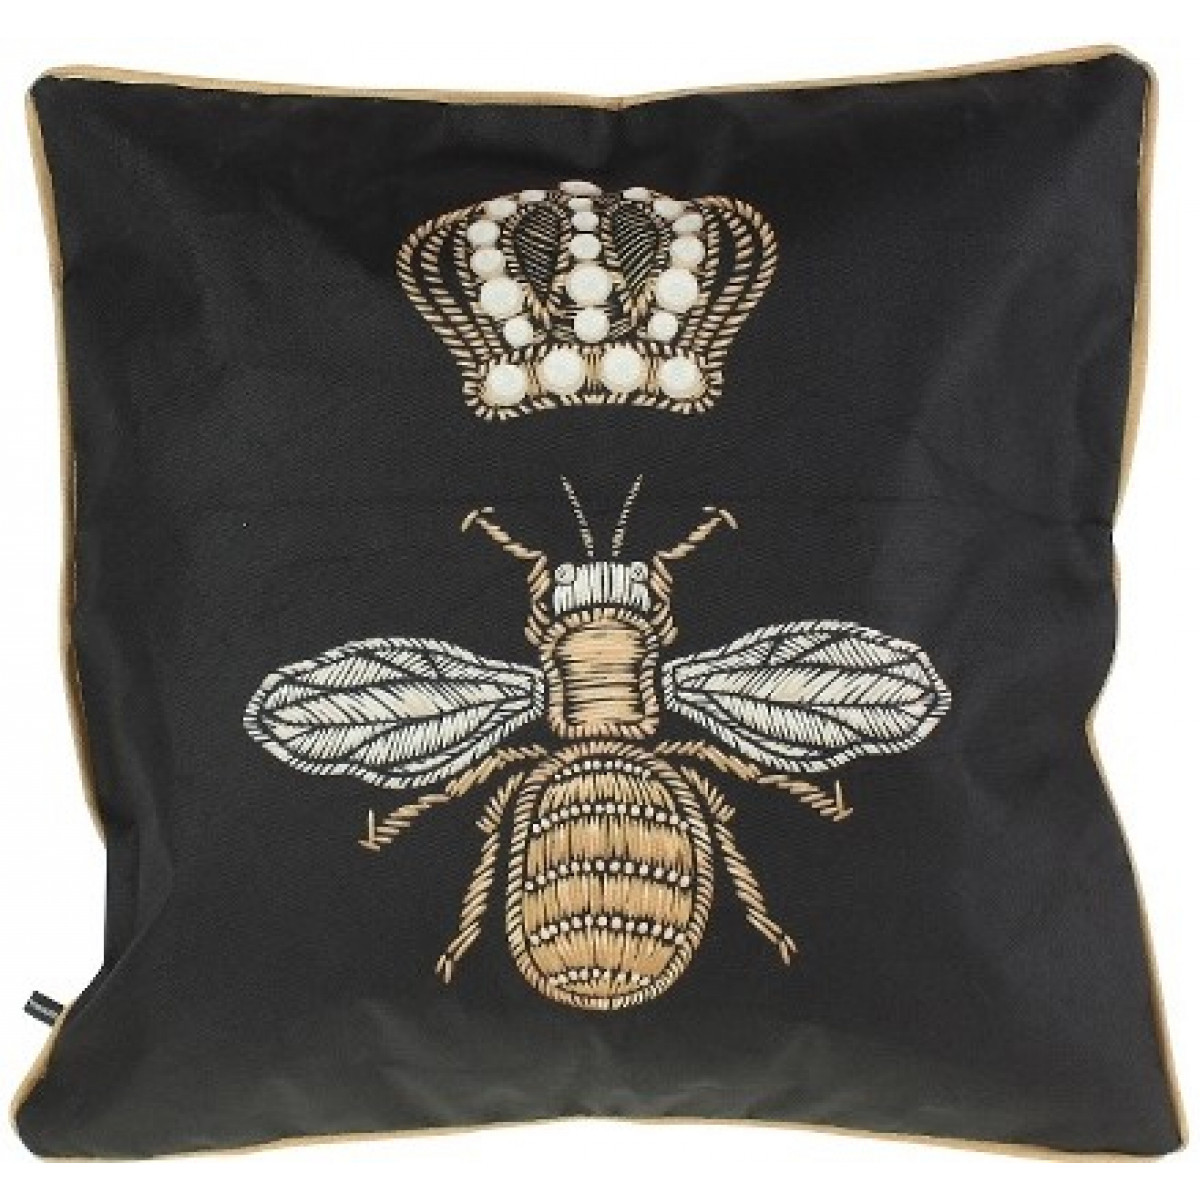 подушка садовая Werner Voss Queen Bee - купить в магазине Yves Delorme Russia